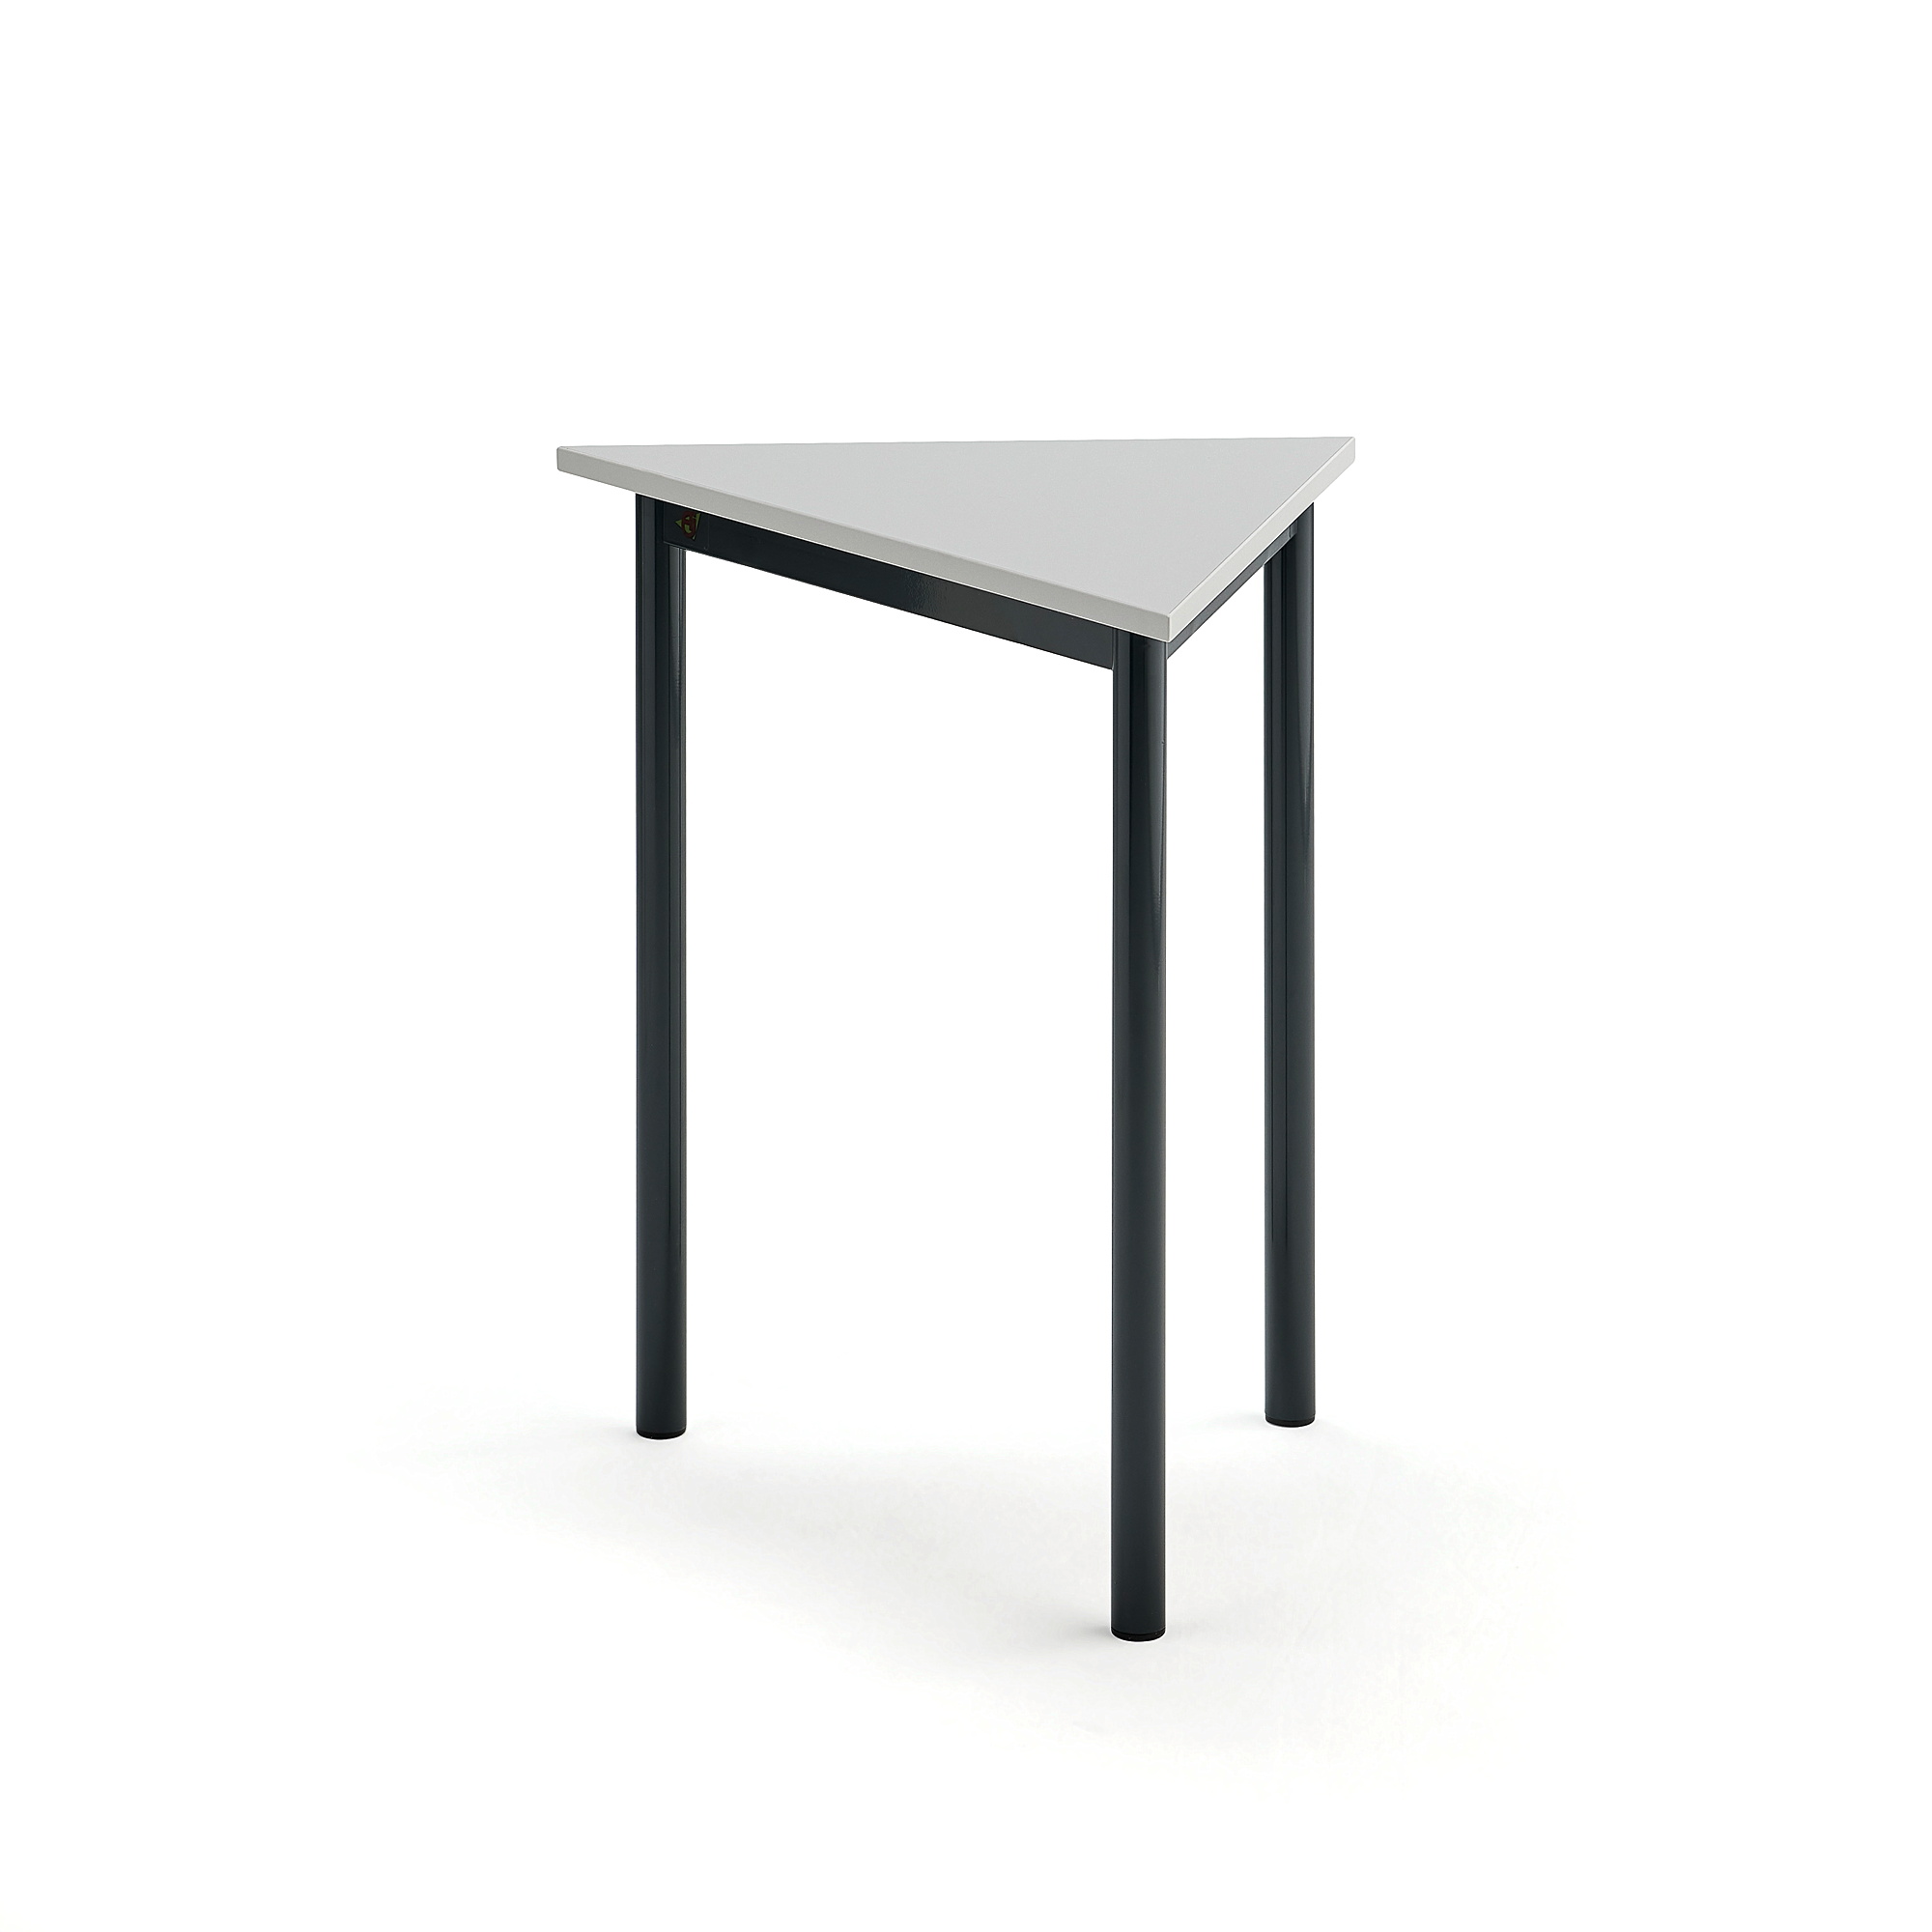 Stůl SONITUS TRIANGEL, 700x600x720 mm, antracitově šedé nohy, HPL deska tlumící hluk, šedá